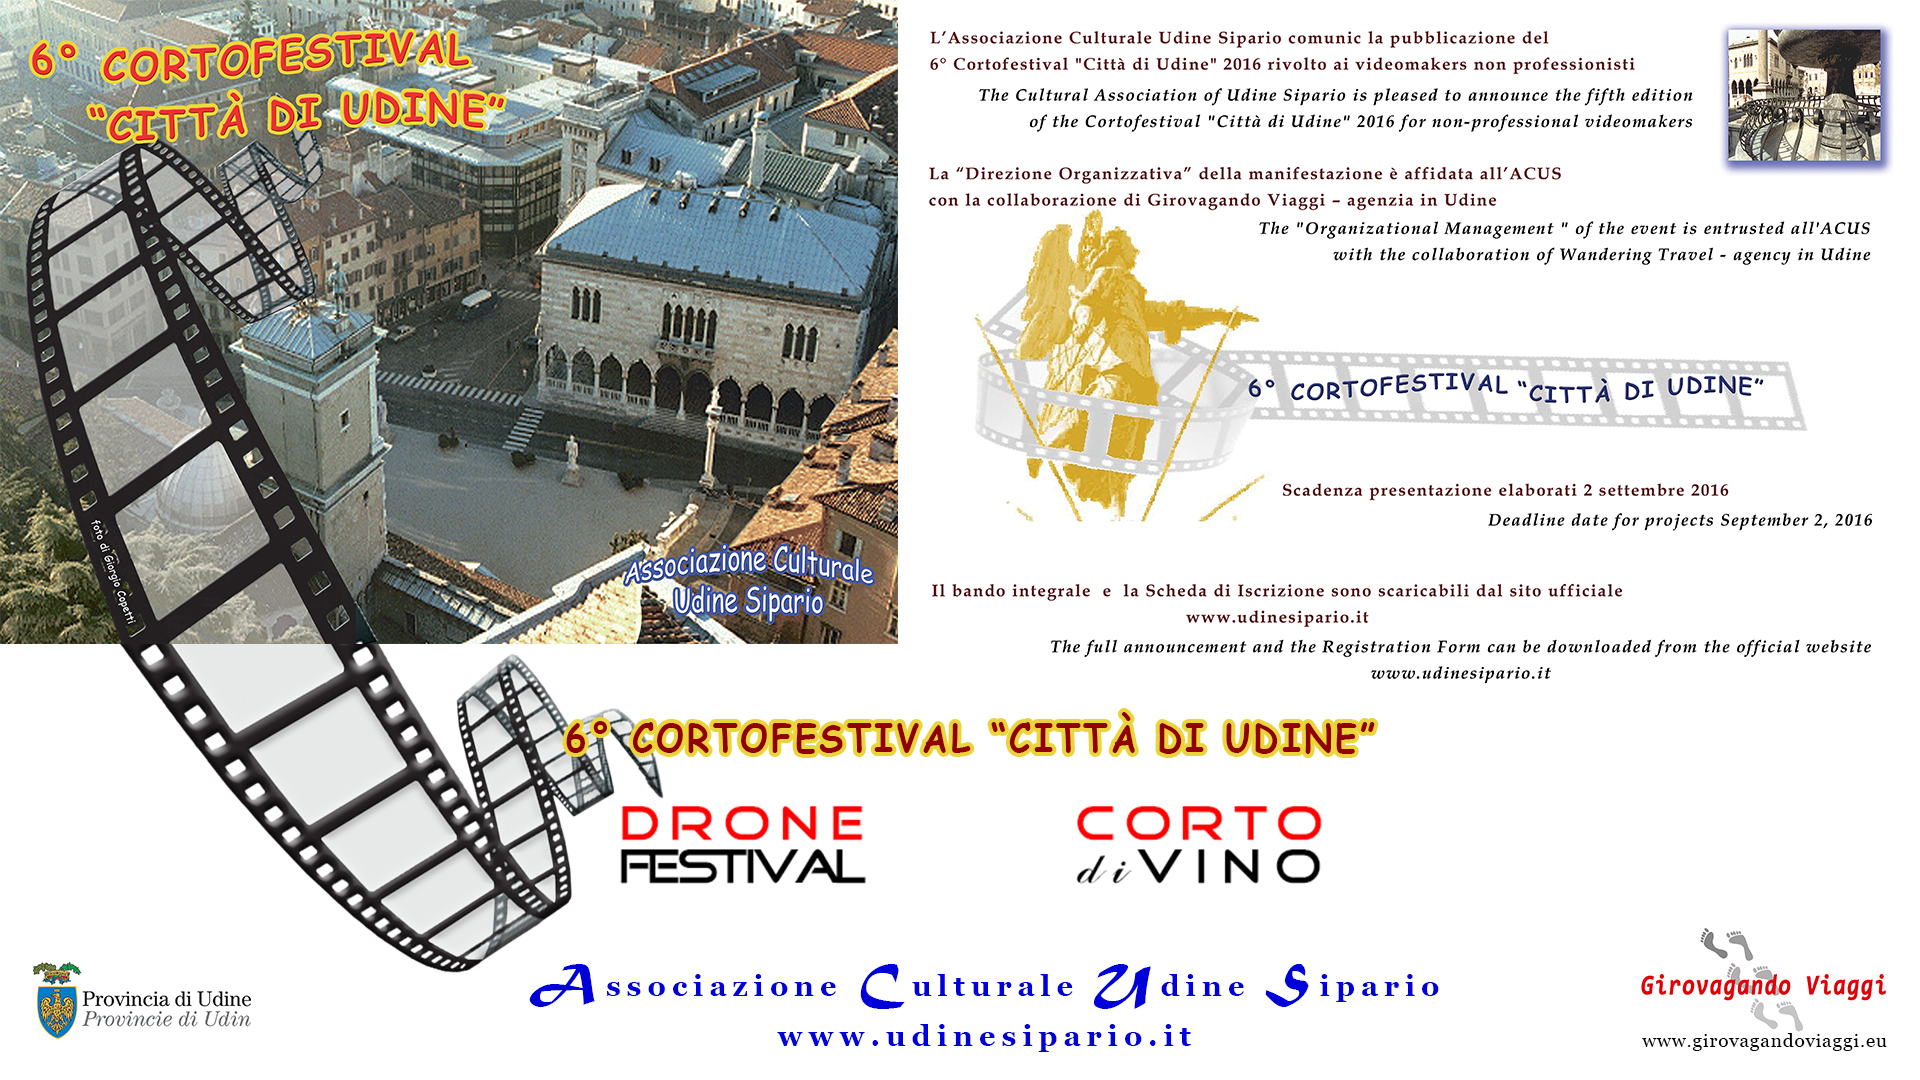 6° CortoFestival Città di Udine: ricezione elaborati prorogata al 31 ottobre